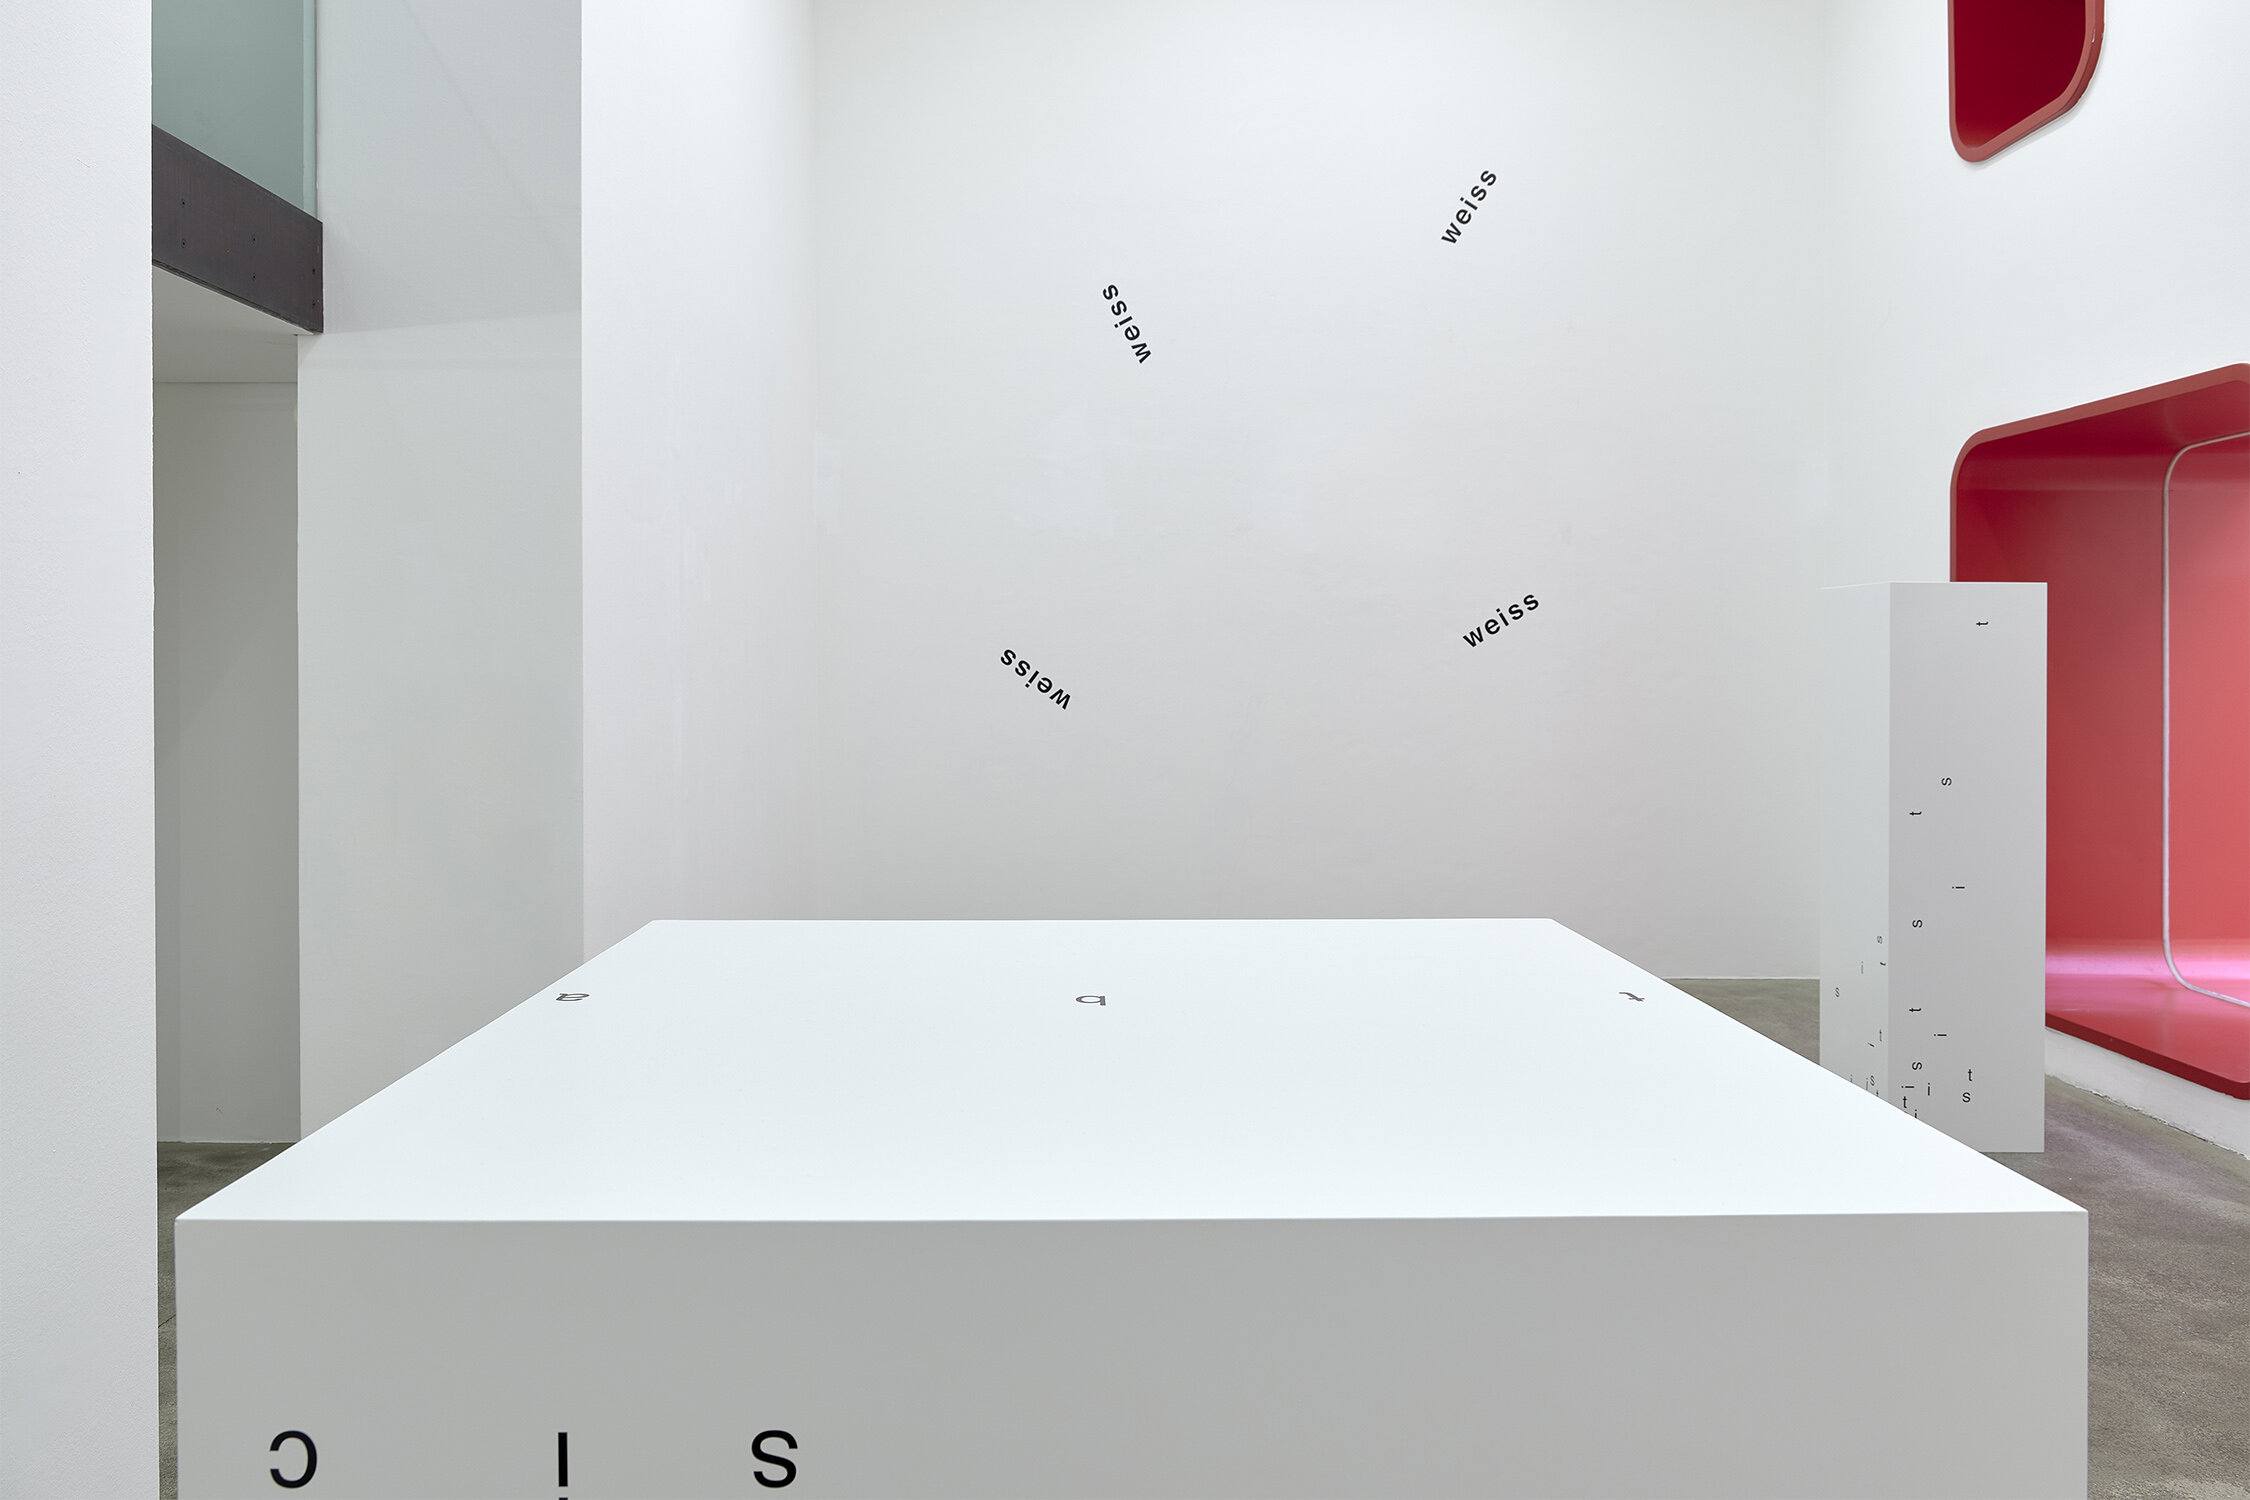 Galerie Johann Widauer-Exhibition-2019-Heinz Gappmayr-08.jpg